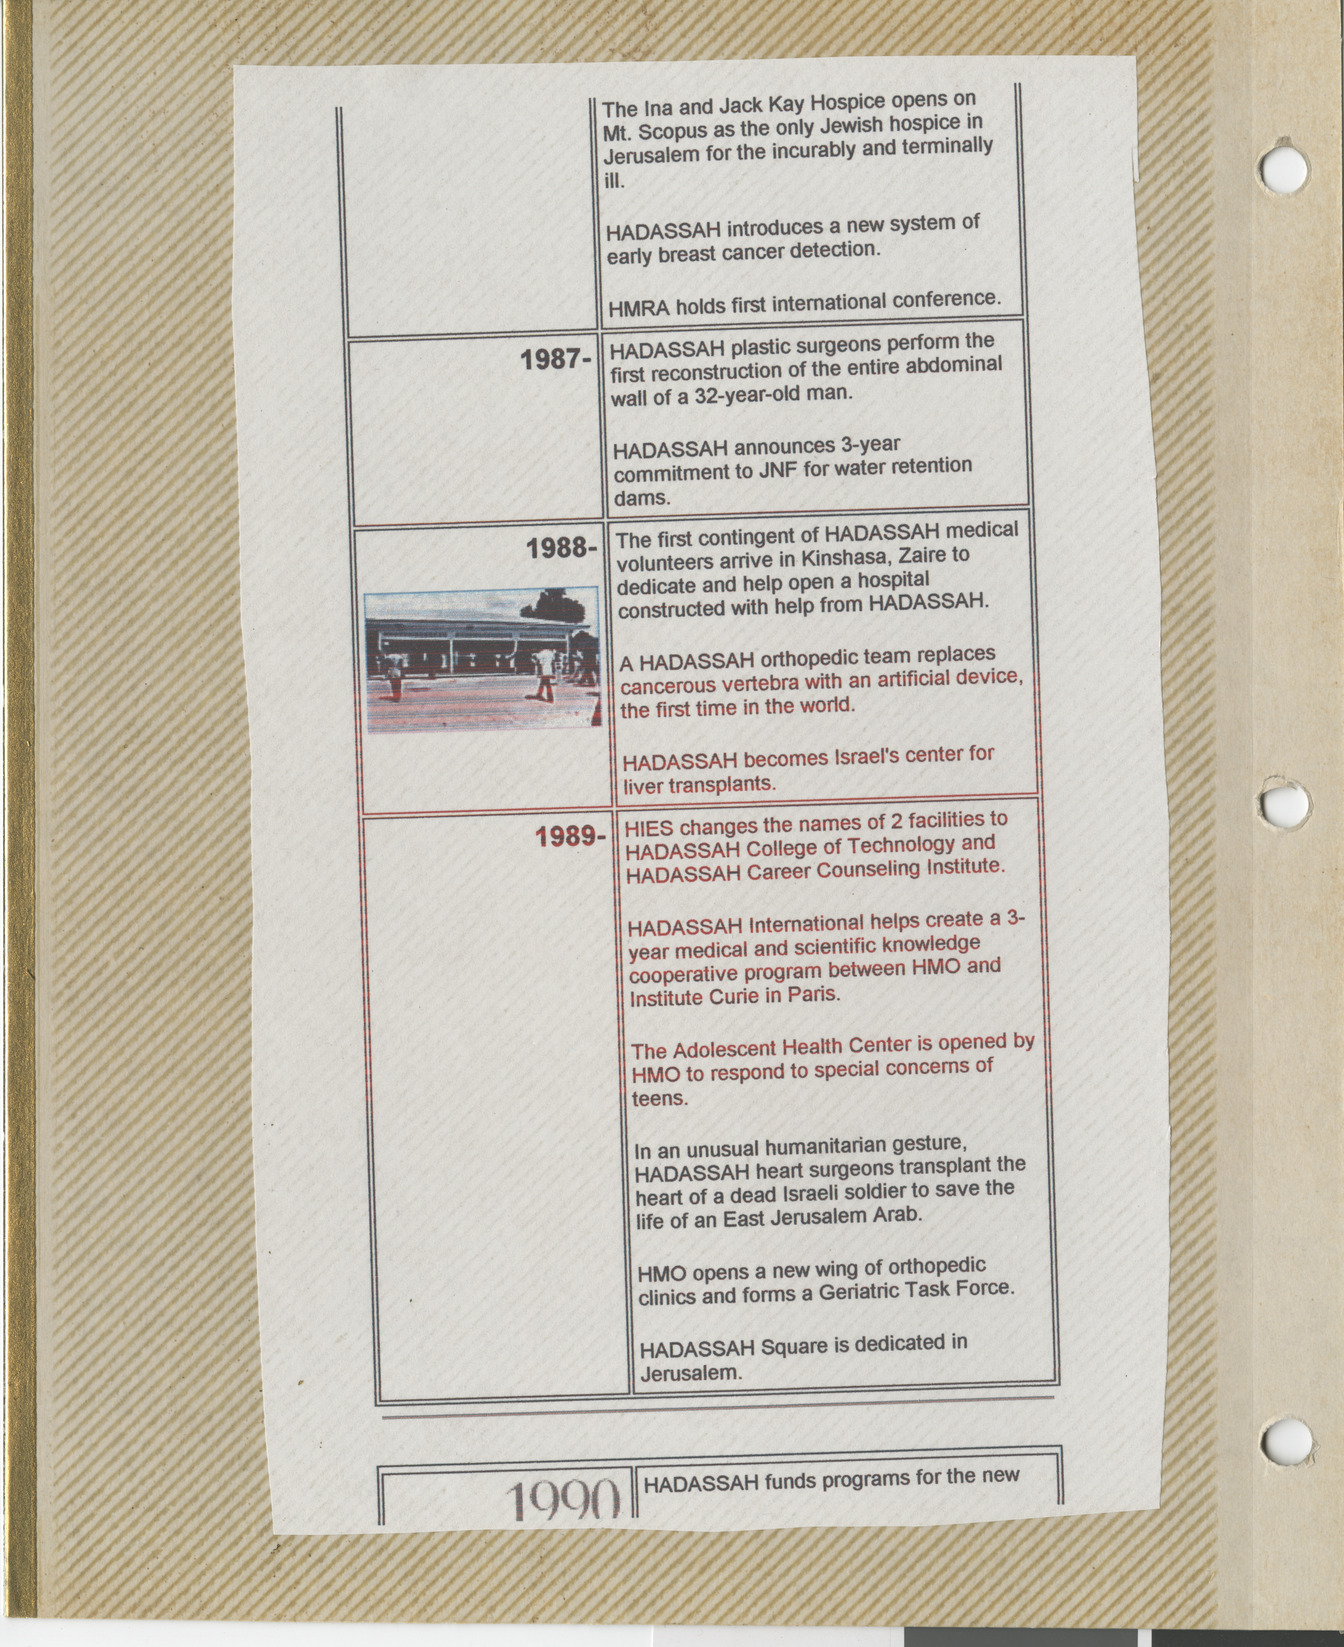 Clipping, Hadassah timeline 1987-1990